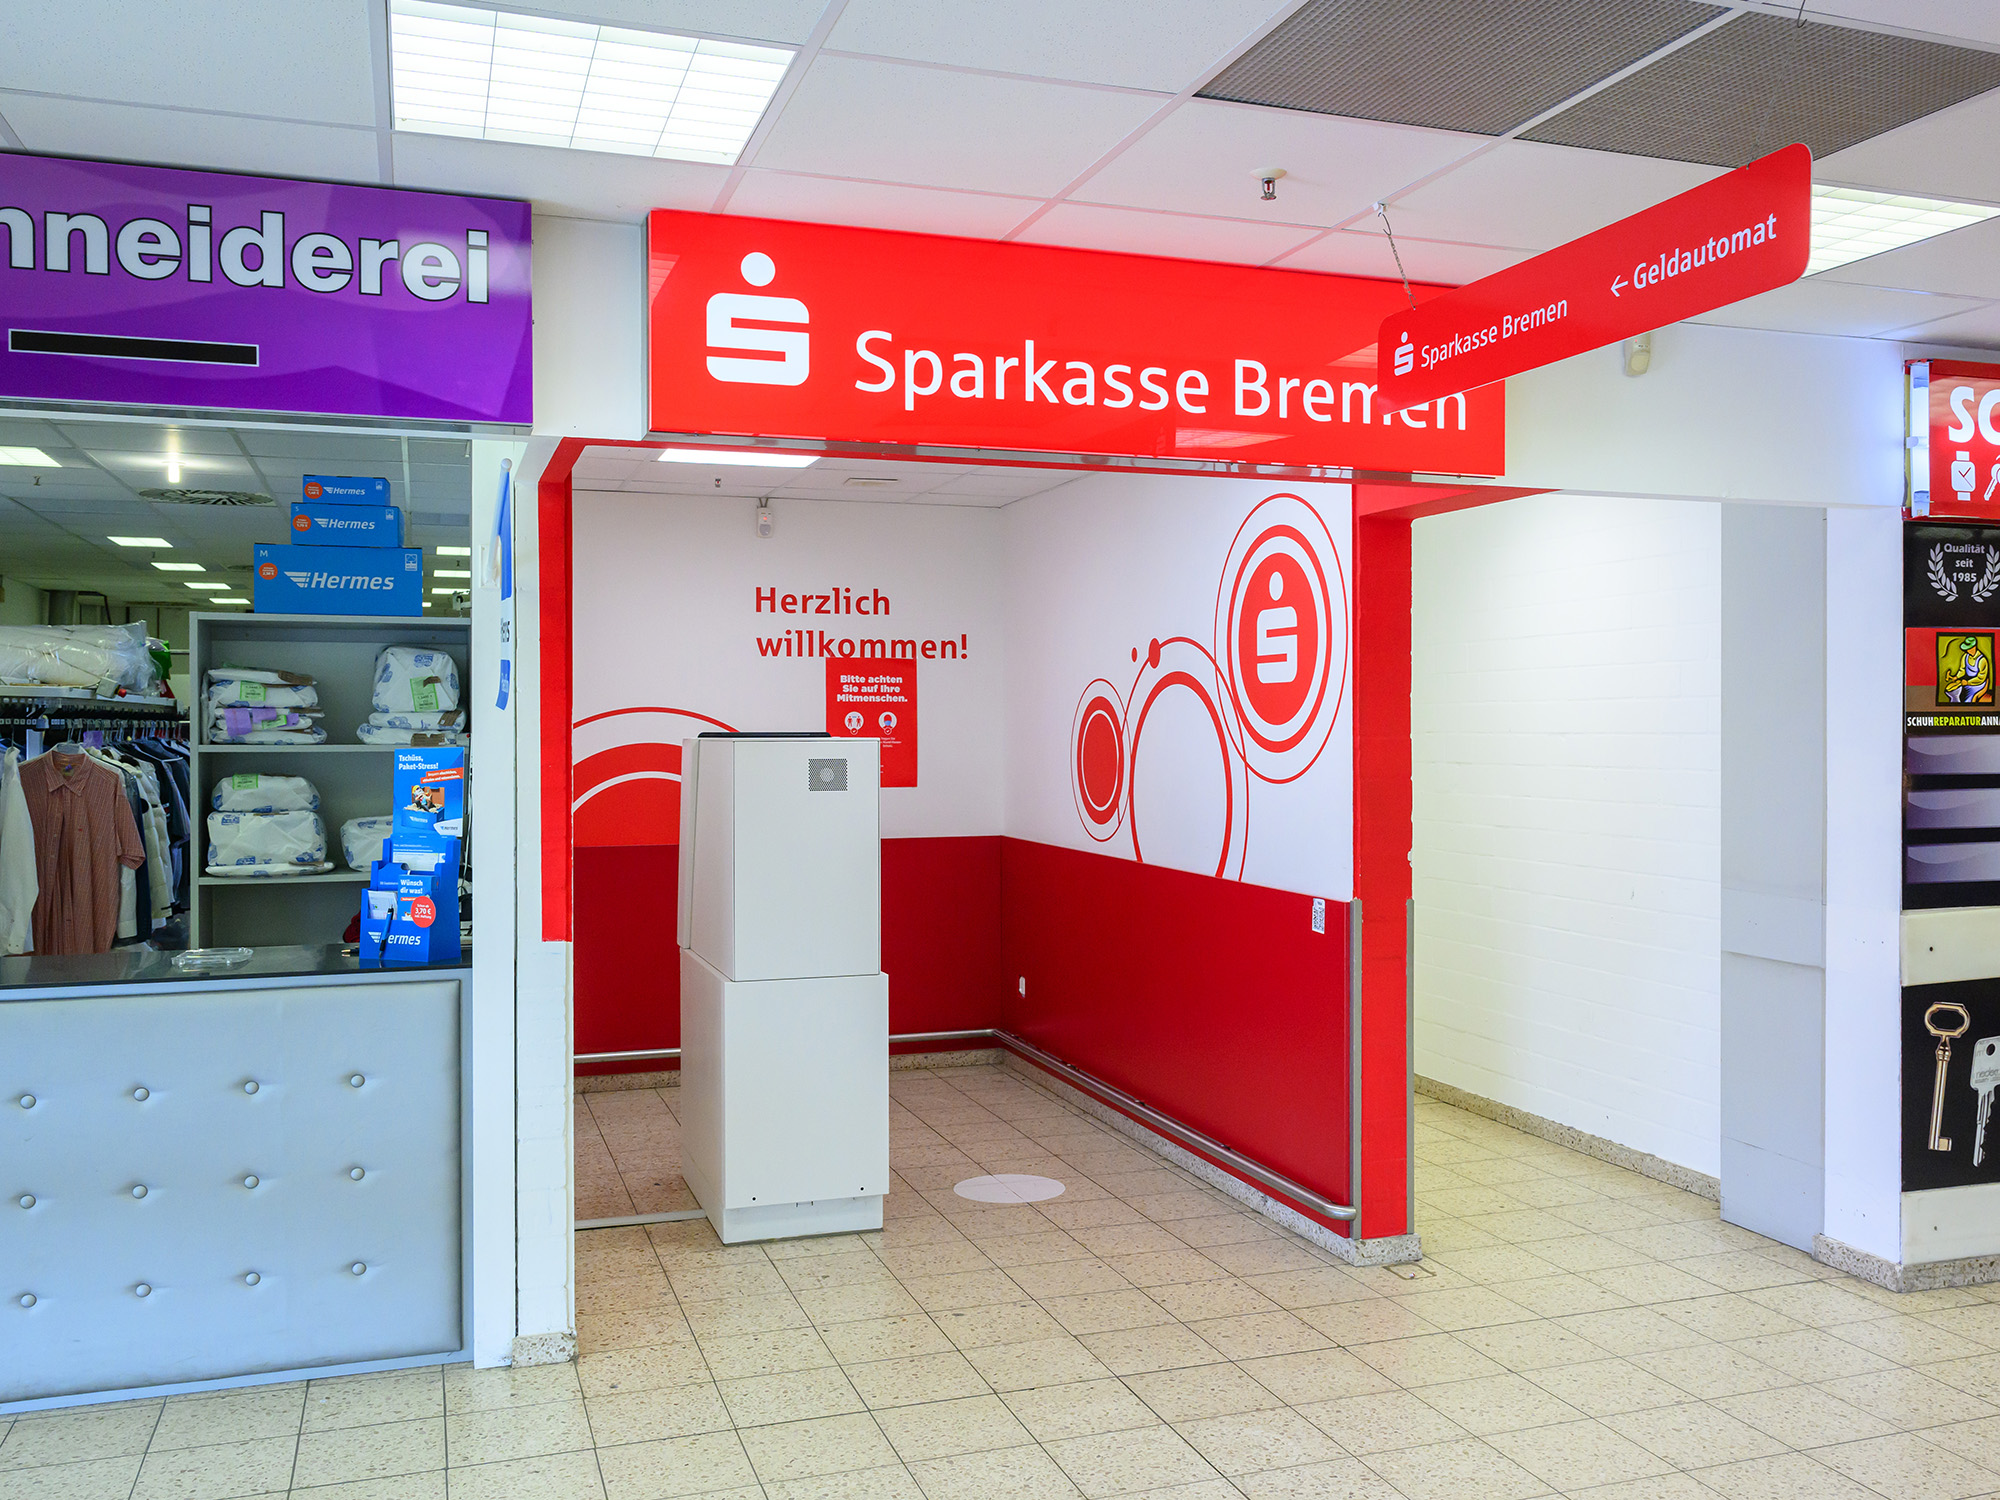 Sparkasse Geldautomat Kaufland Ihlpohl